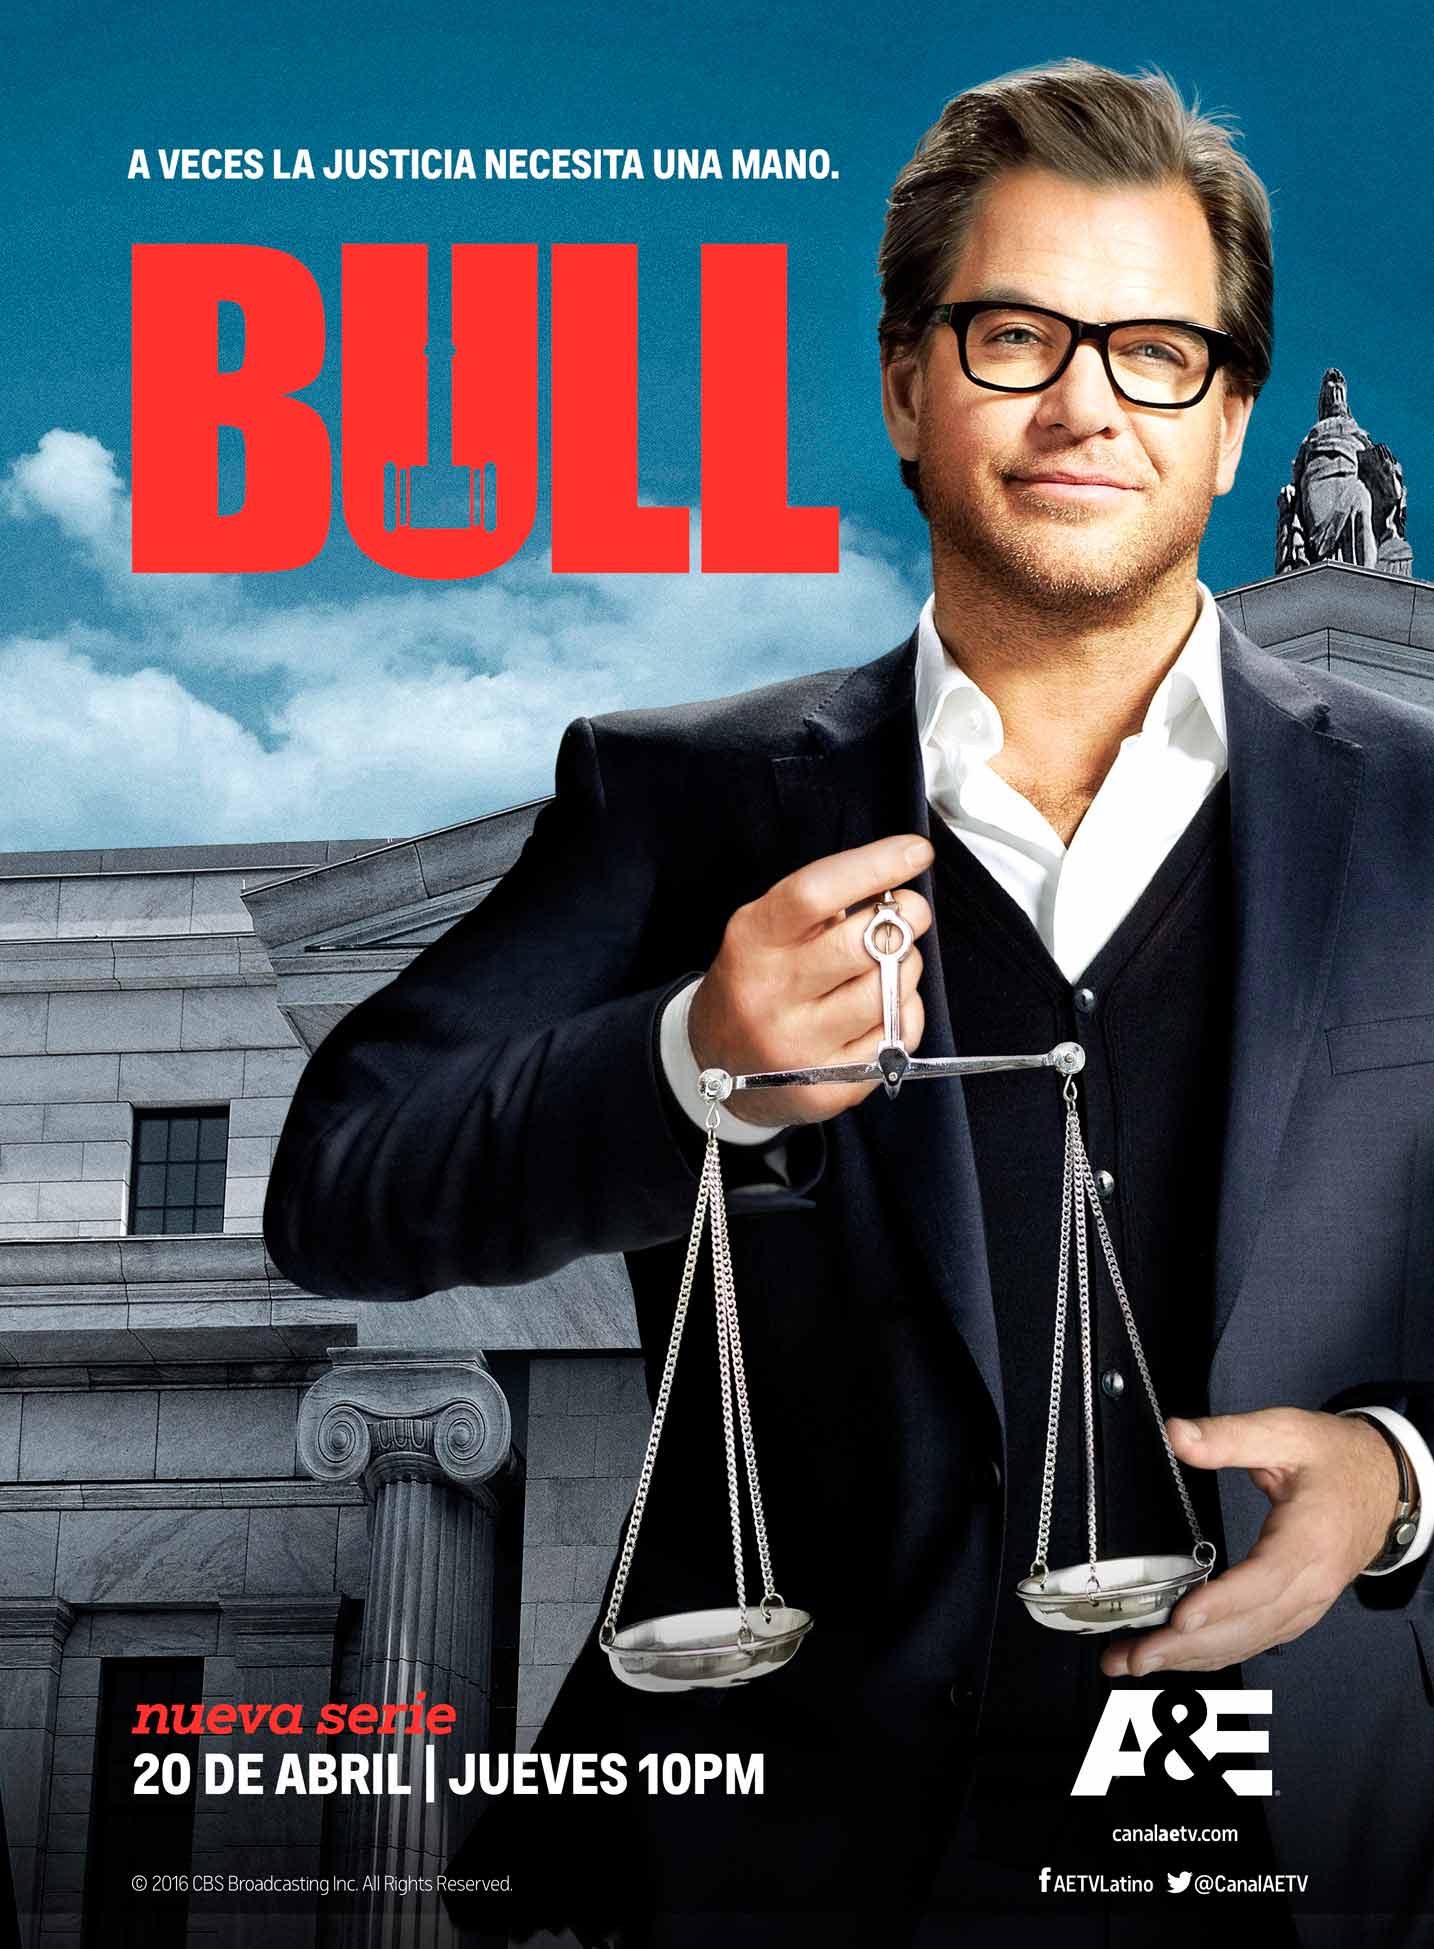 Bull: Si te gusta hacer justicia por tu propia mano no te pierdas esta nueva serie 1